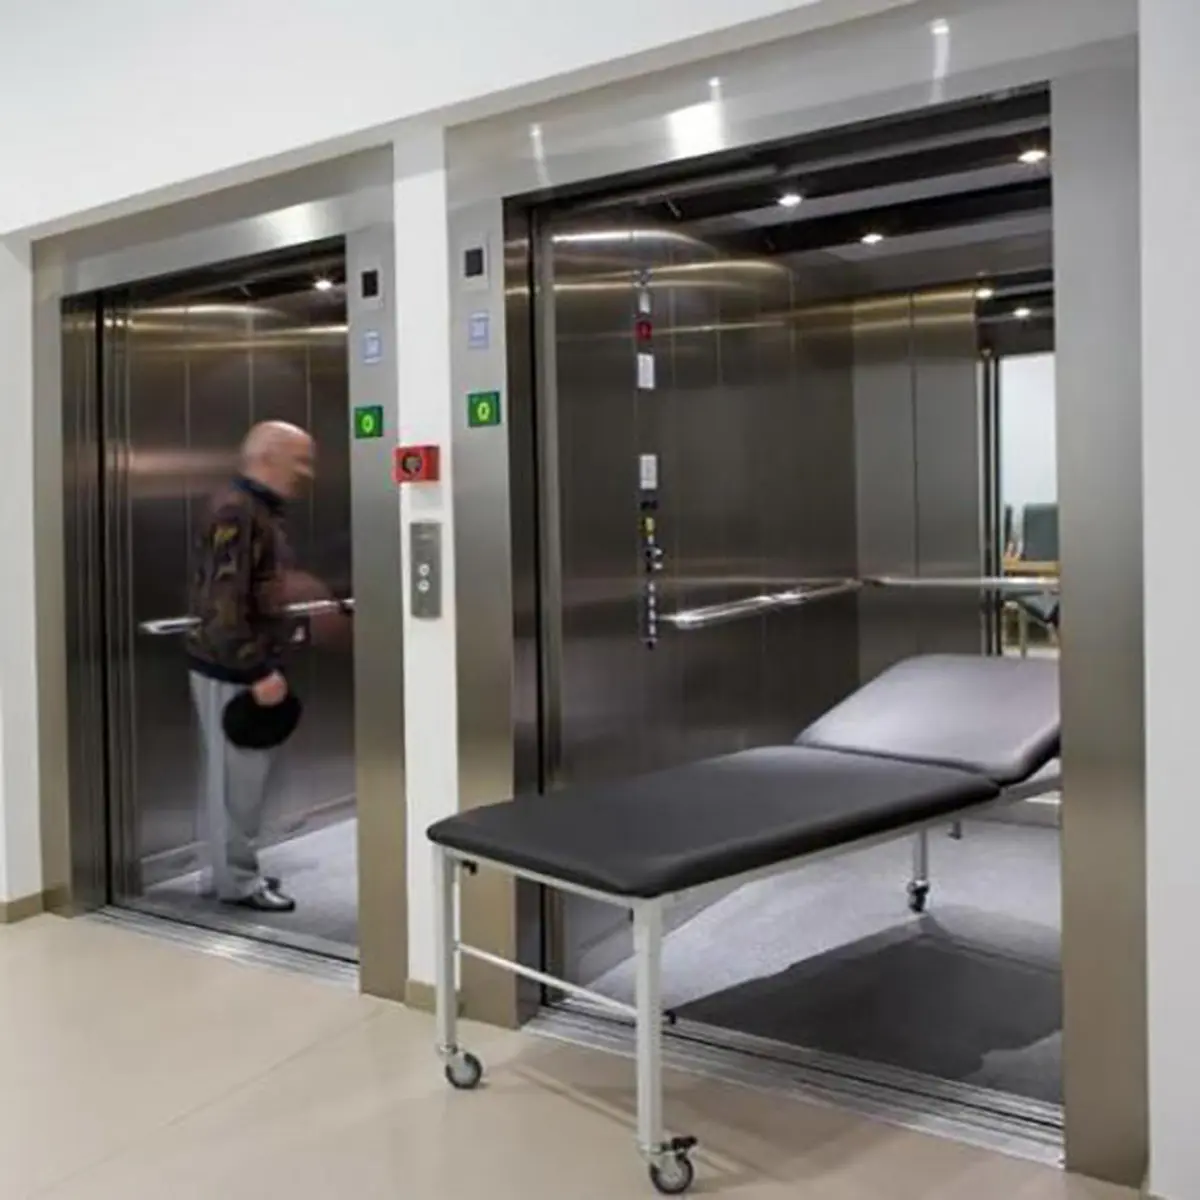 تنها 20 درصد آسانسور مراکز درمانی استاندارد میباشند